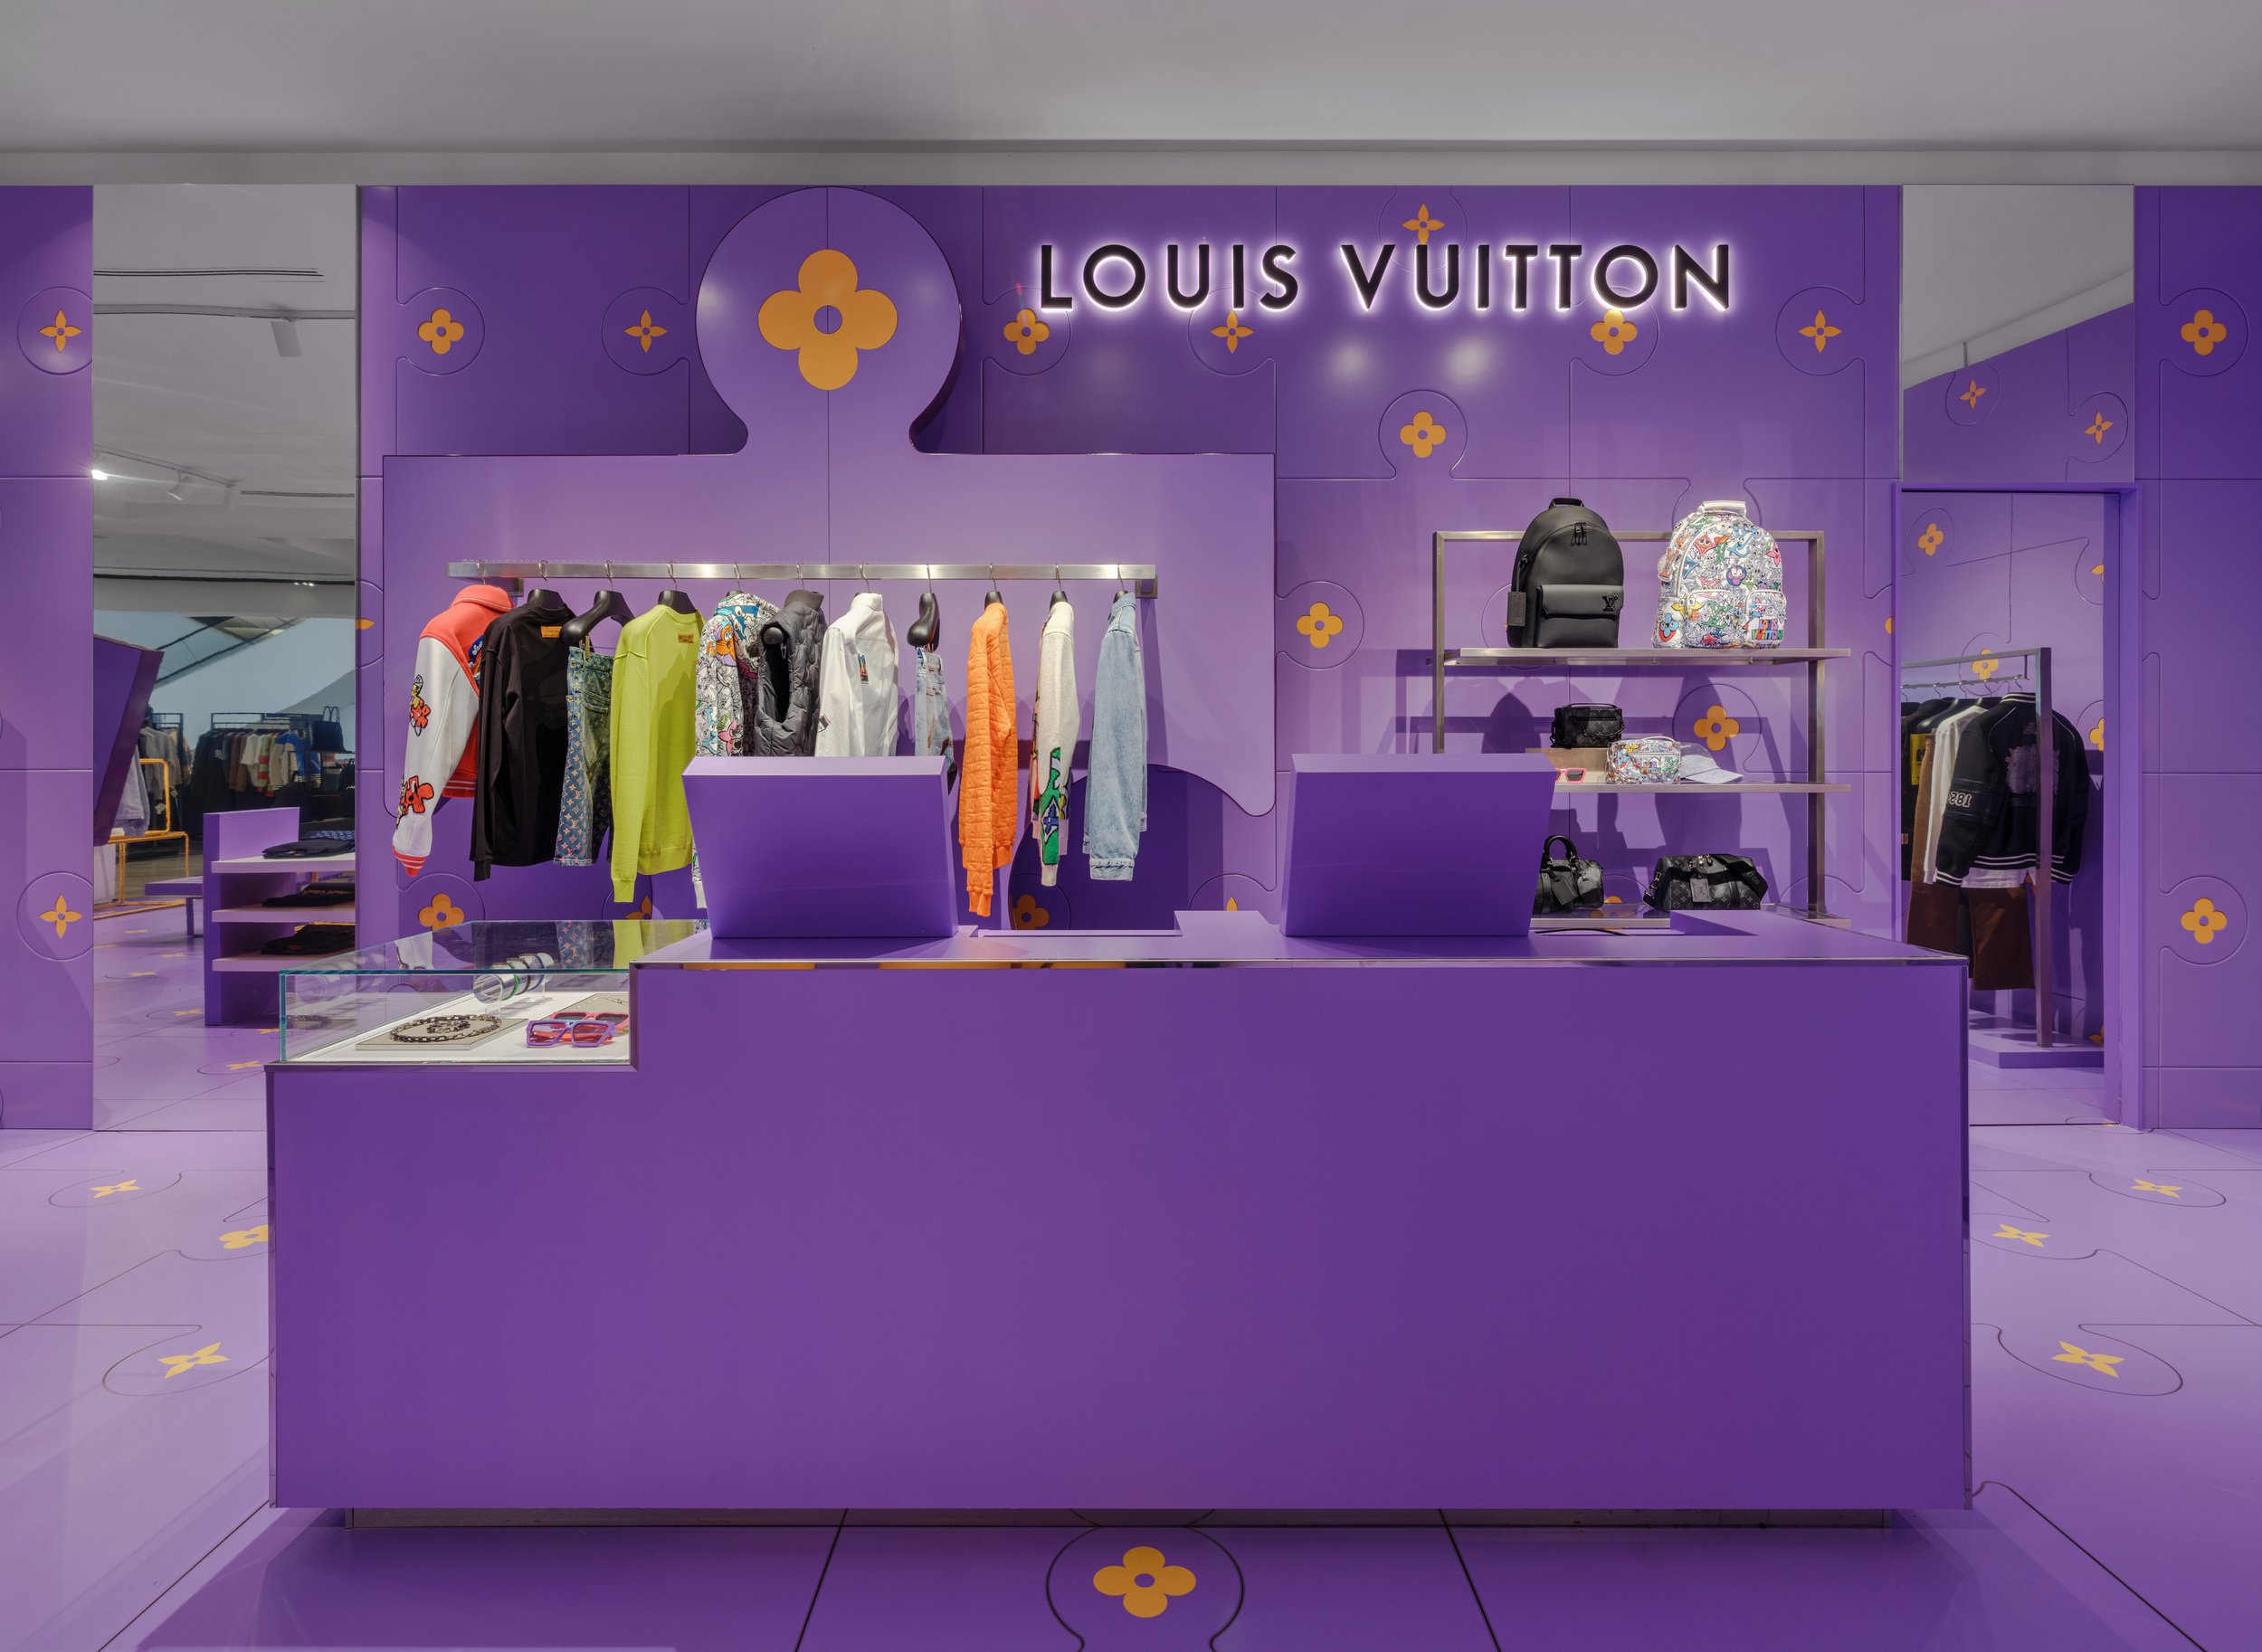 Louis Vuitton at Selfridges. - AKT II